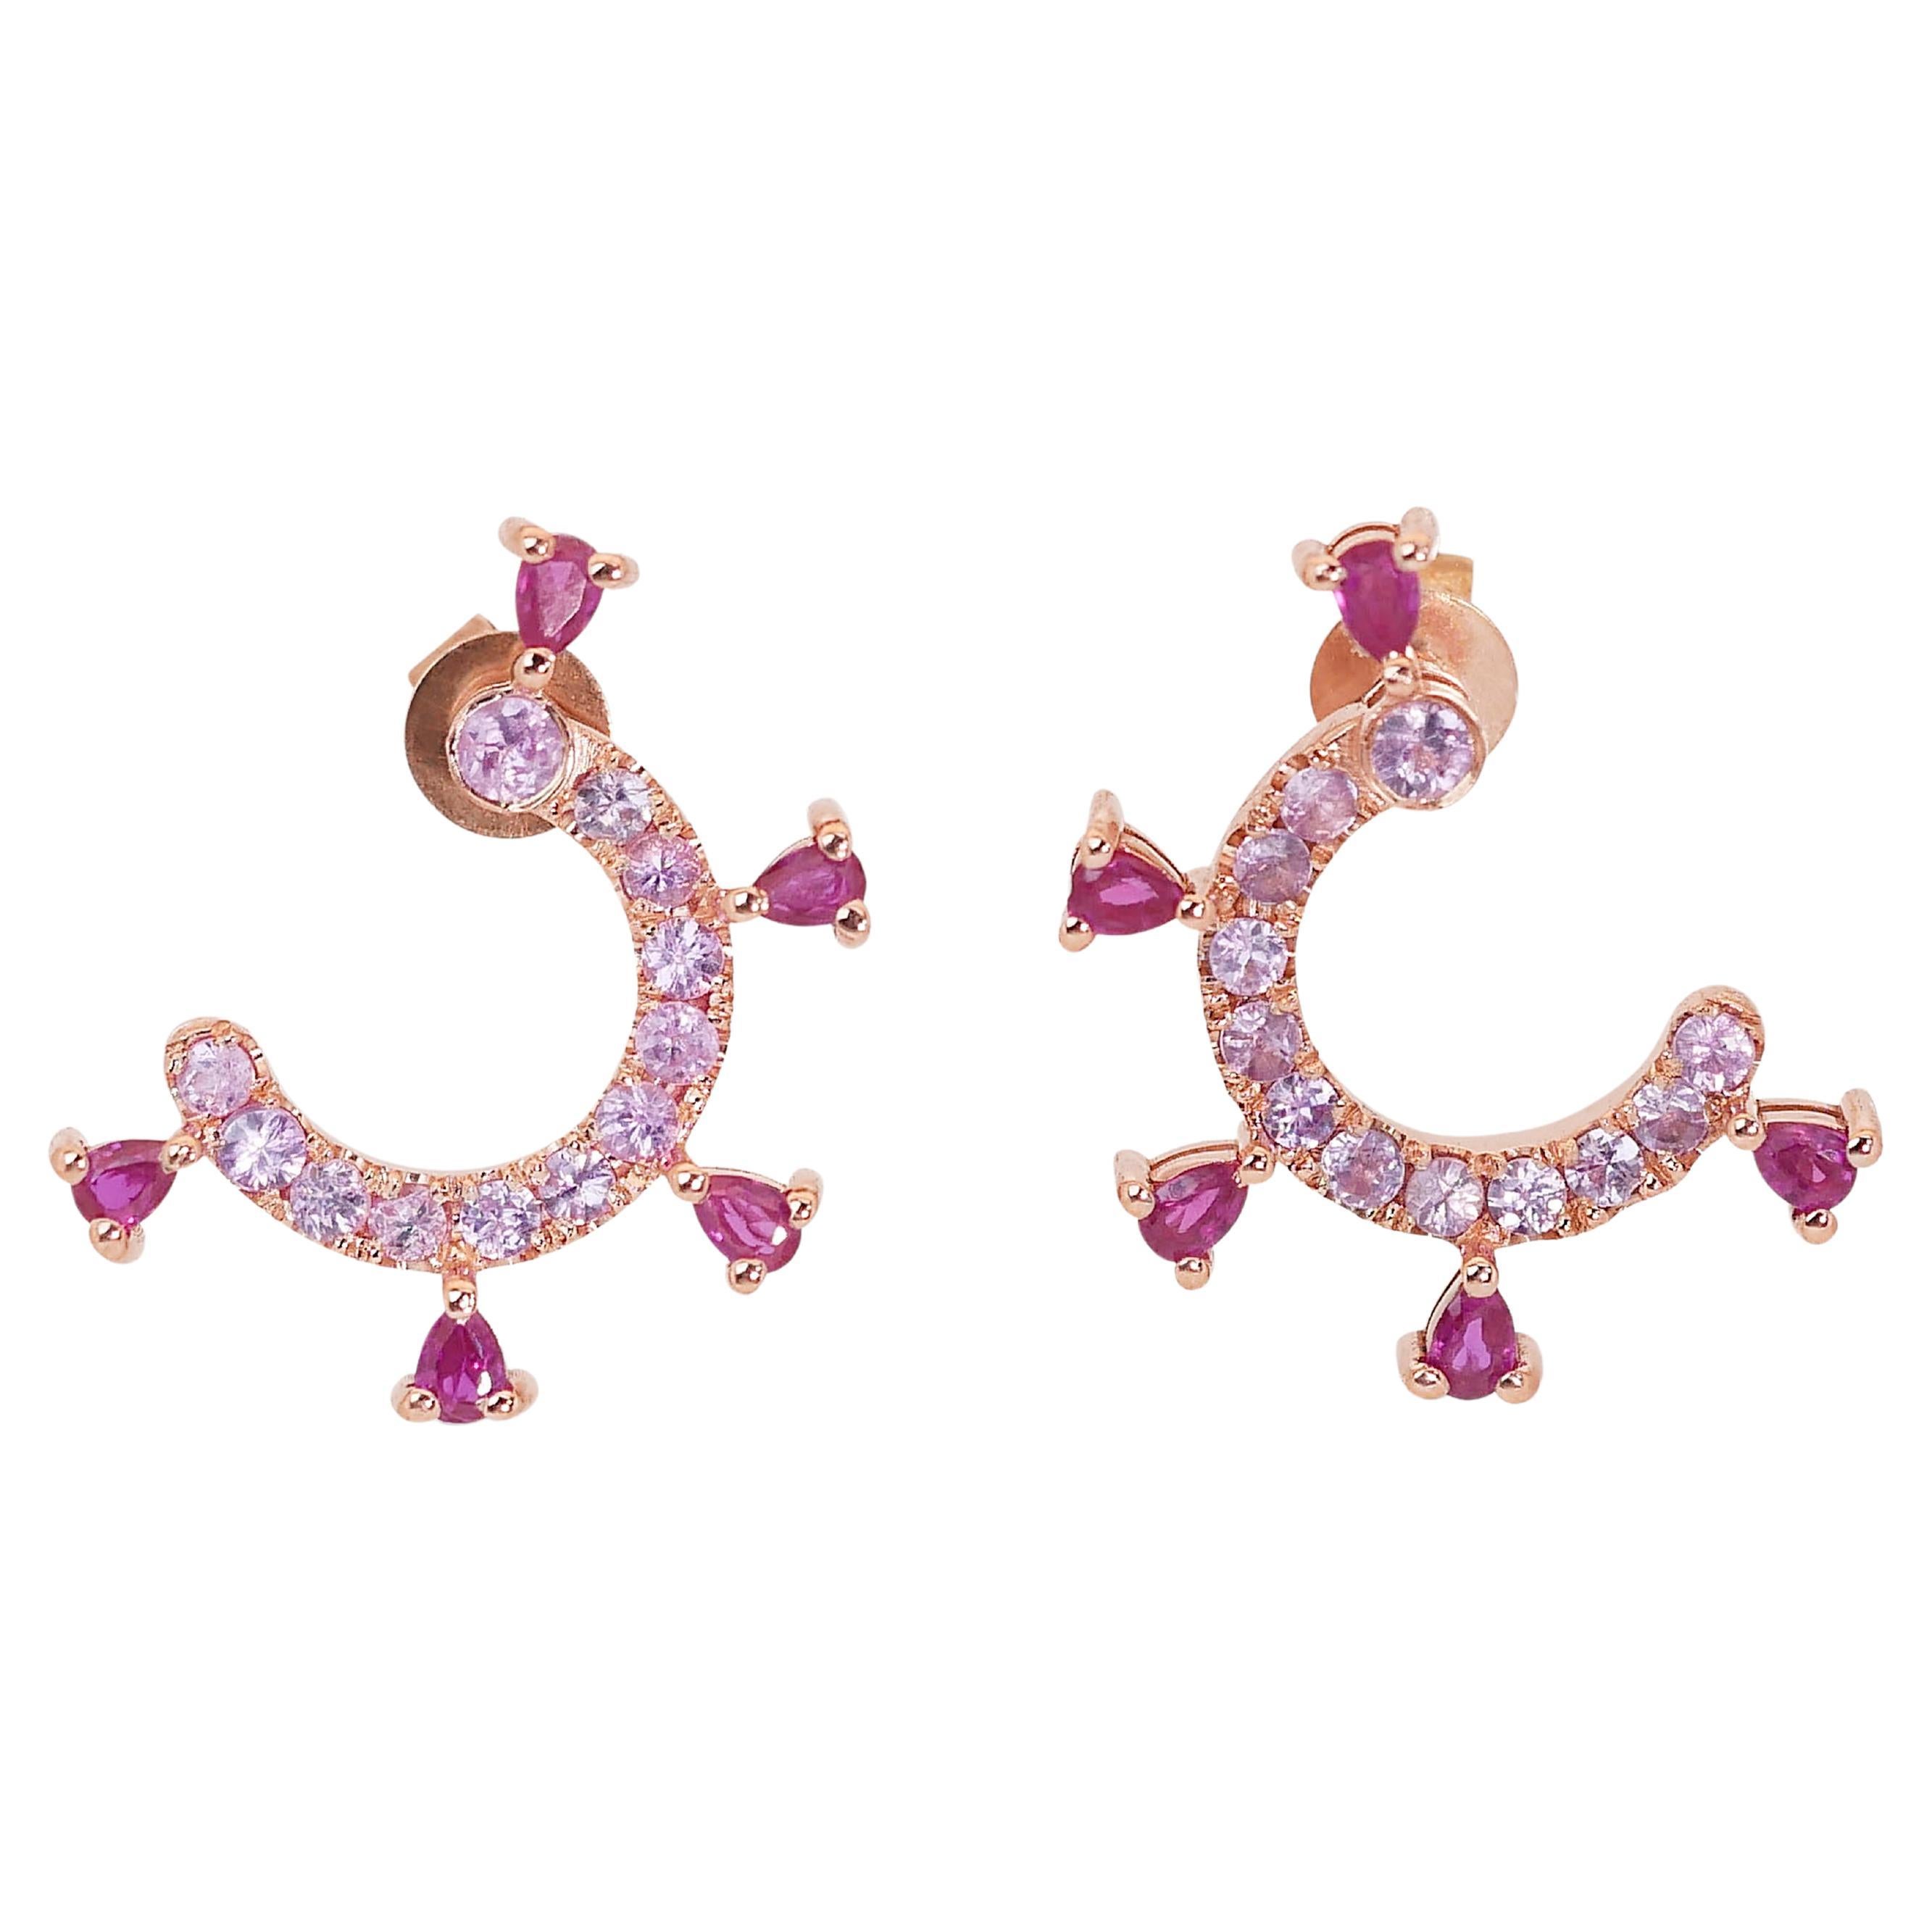 Einzigartige Rubine und Saphire Ohrringe mit 1,88 Karat 

Lassen Sie sich von der königlichen Schönheit dieser exquisiten Reif-Ohrringe verzaubern und zeigen Sie Ihren Stil. Mit dem AIG-Zertifikat versehen, bieten diese Ohrringe nicht nur eine